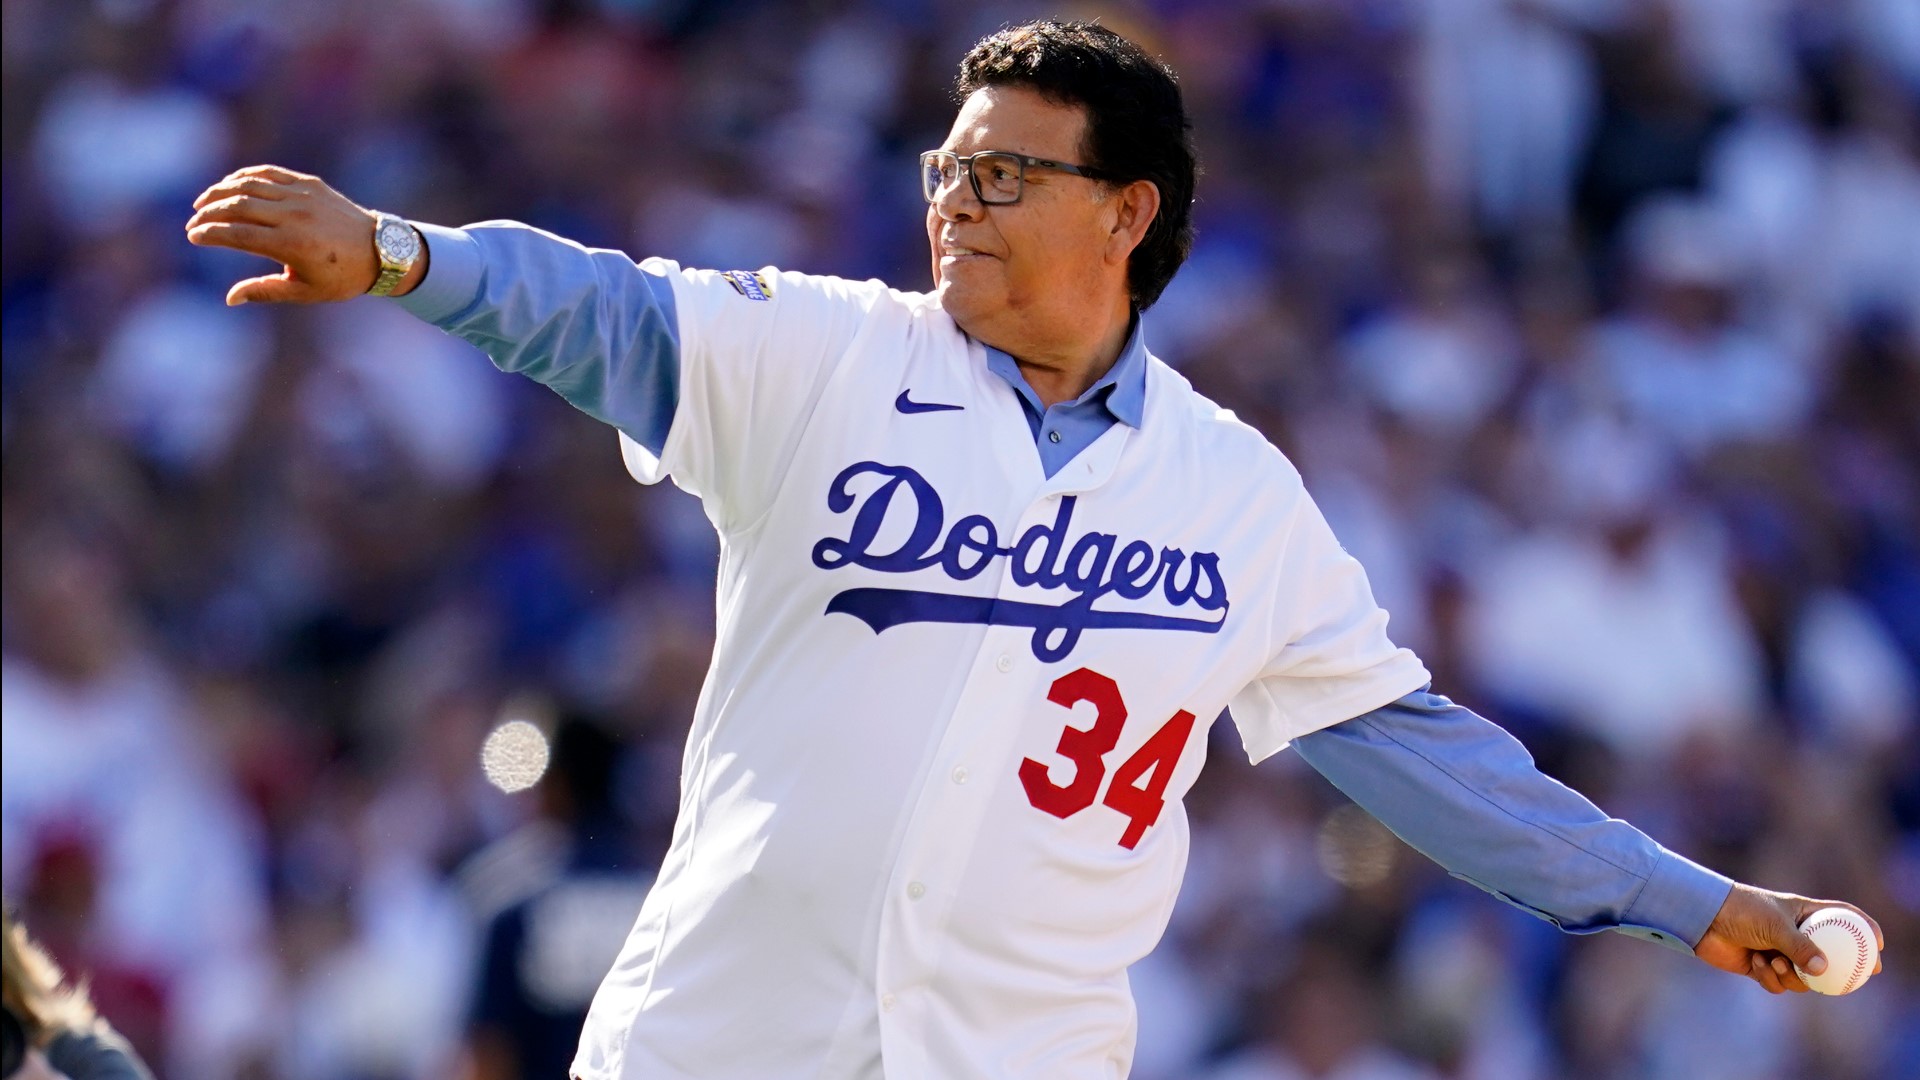 Los Angeles Dodgers tendrán una ceremonia para retirar el número 34 del lanzador mexicano Fernando Valenzuela